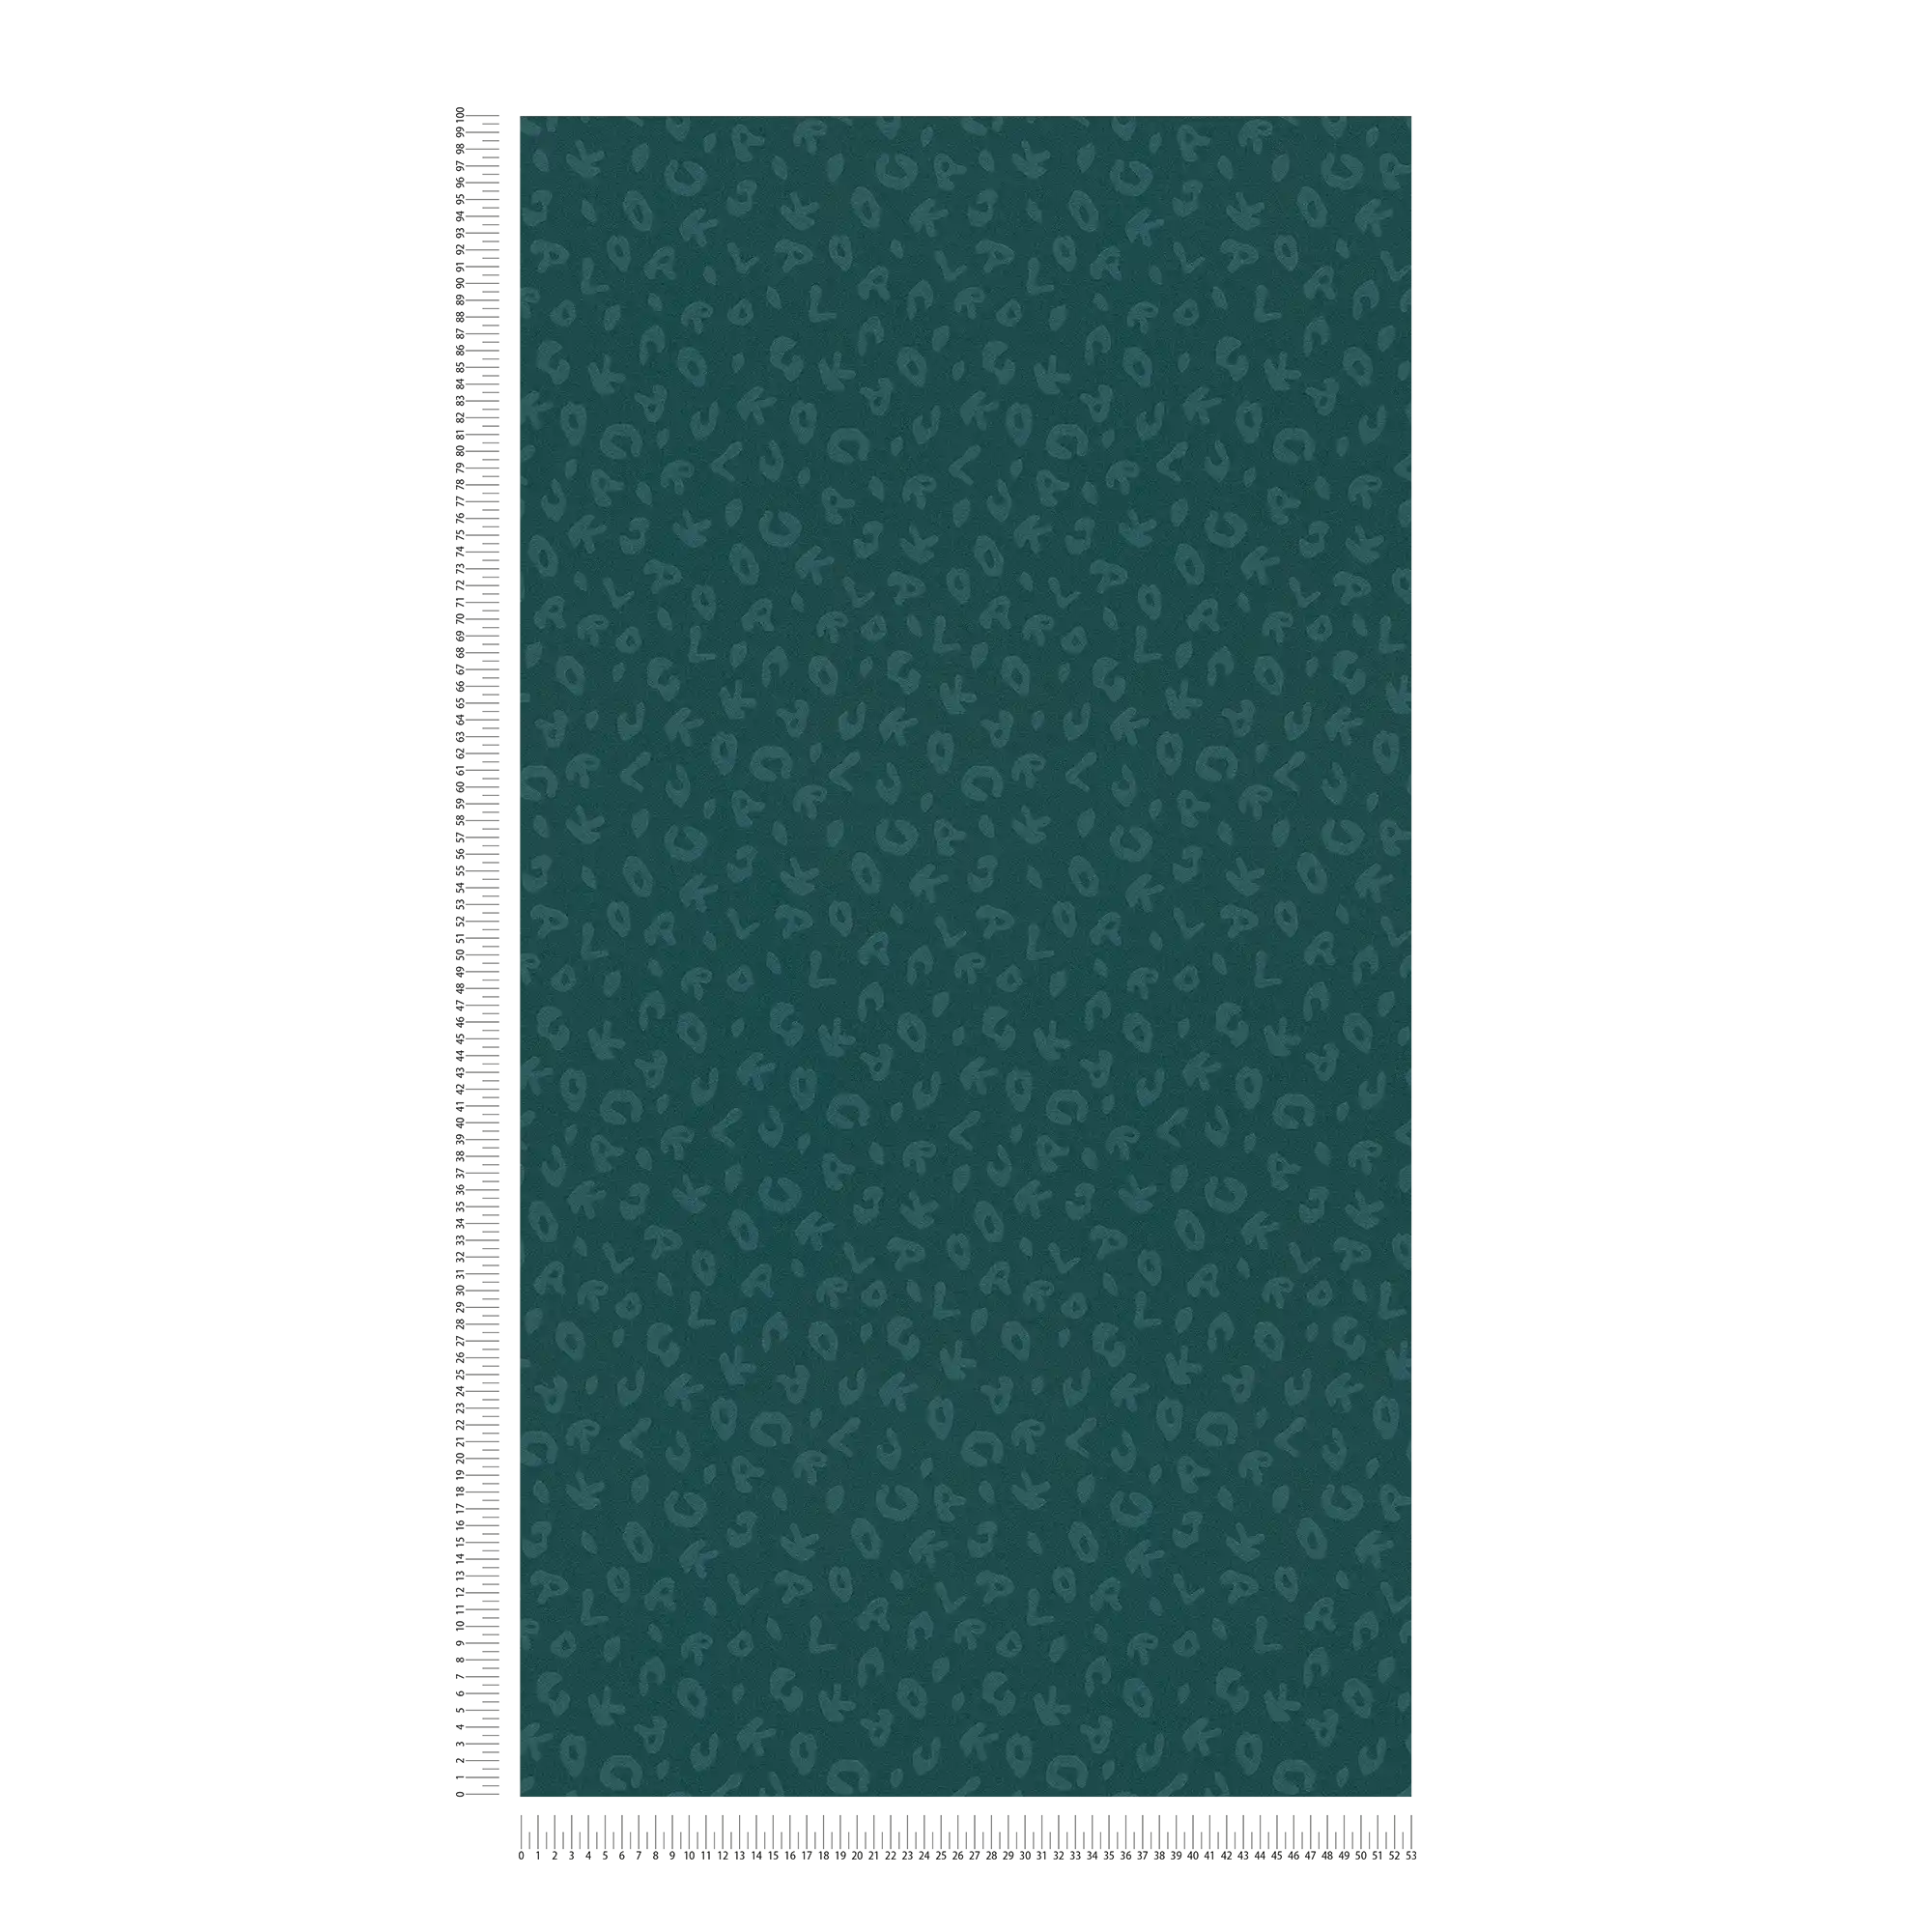             Karl LAGERFELD wallpaper Animal Print - Green, Metallic
        